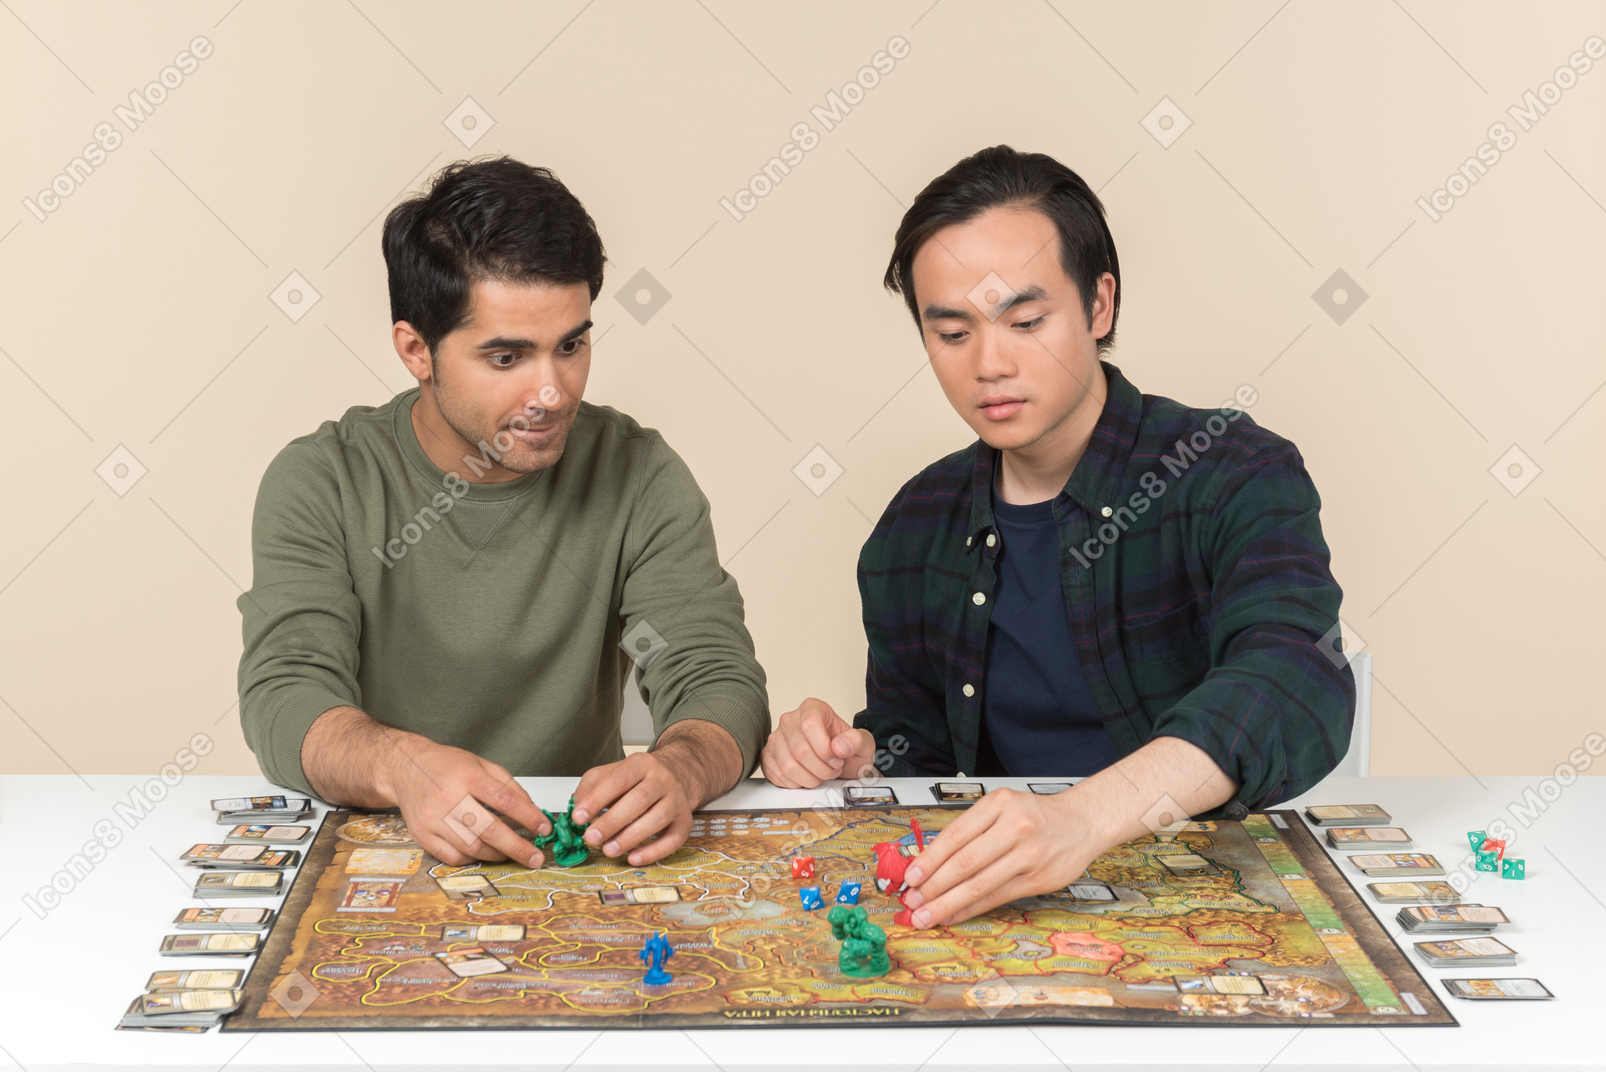 不同肤色的男性朋友坐在桌前和玩棋盘游戏